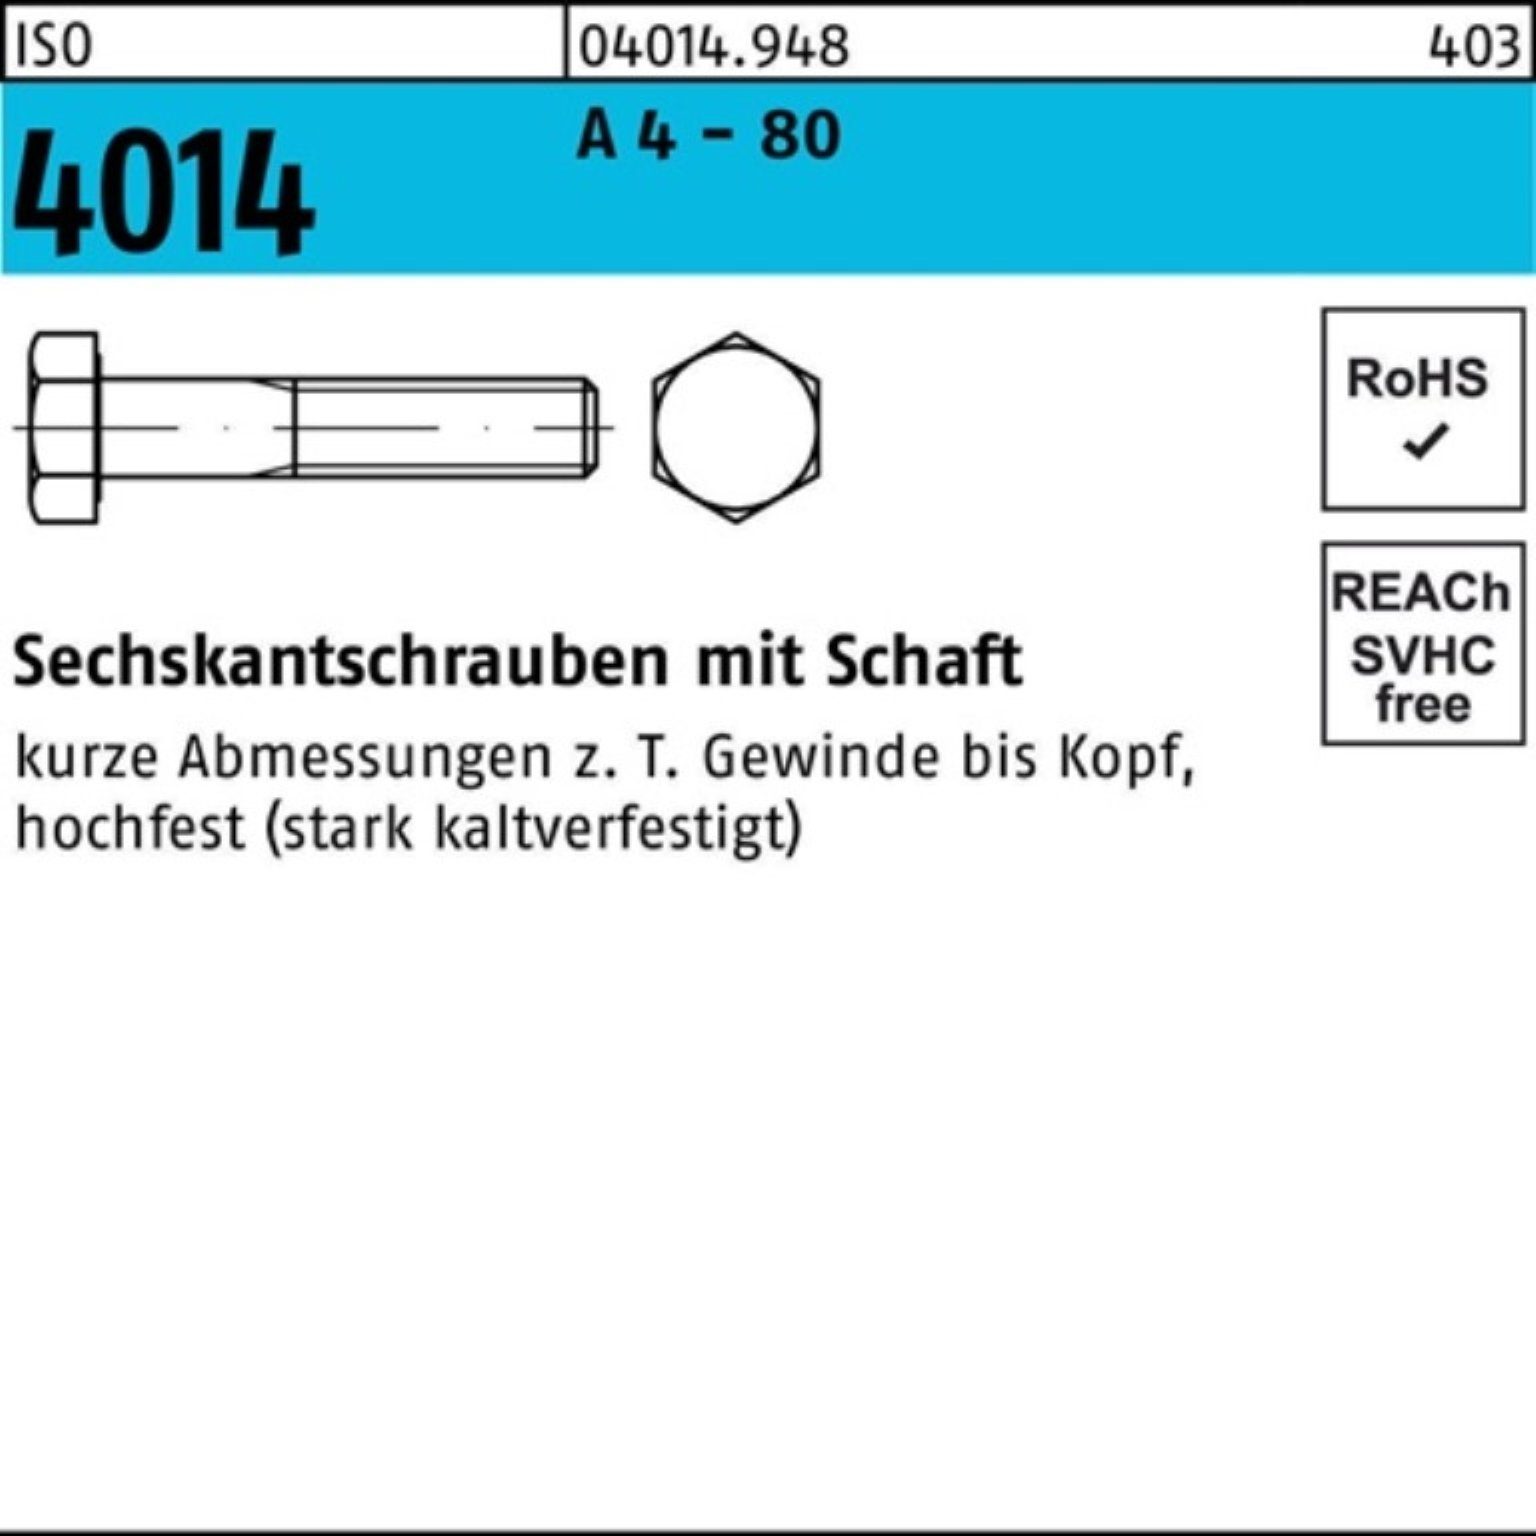 M6x Sechskantschraube Sechskantschraube 4014 Bufab ISO Schaft 30 A 4 80 100er Stüc Pack - 100